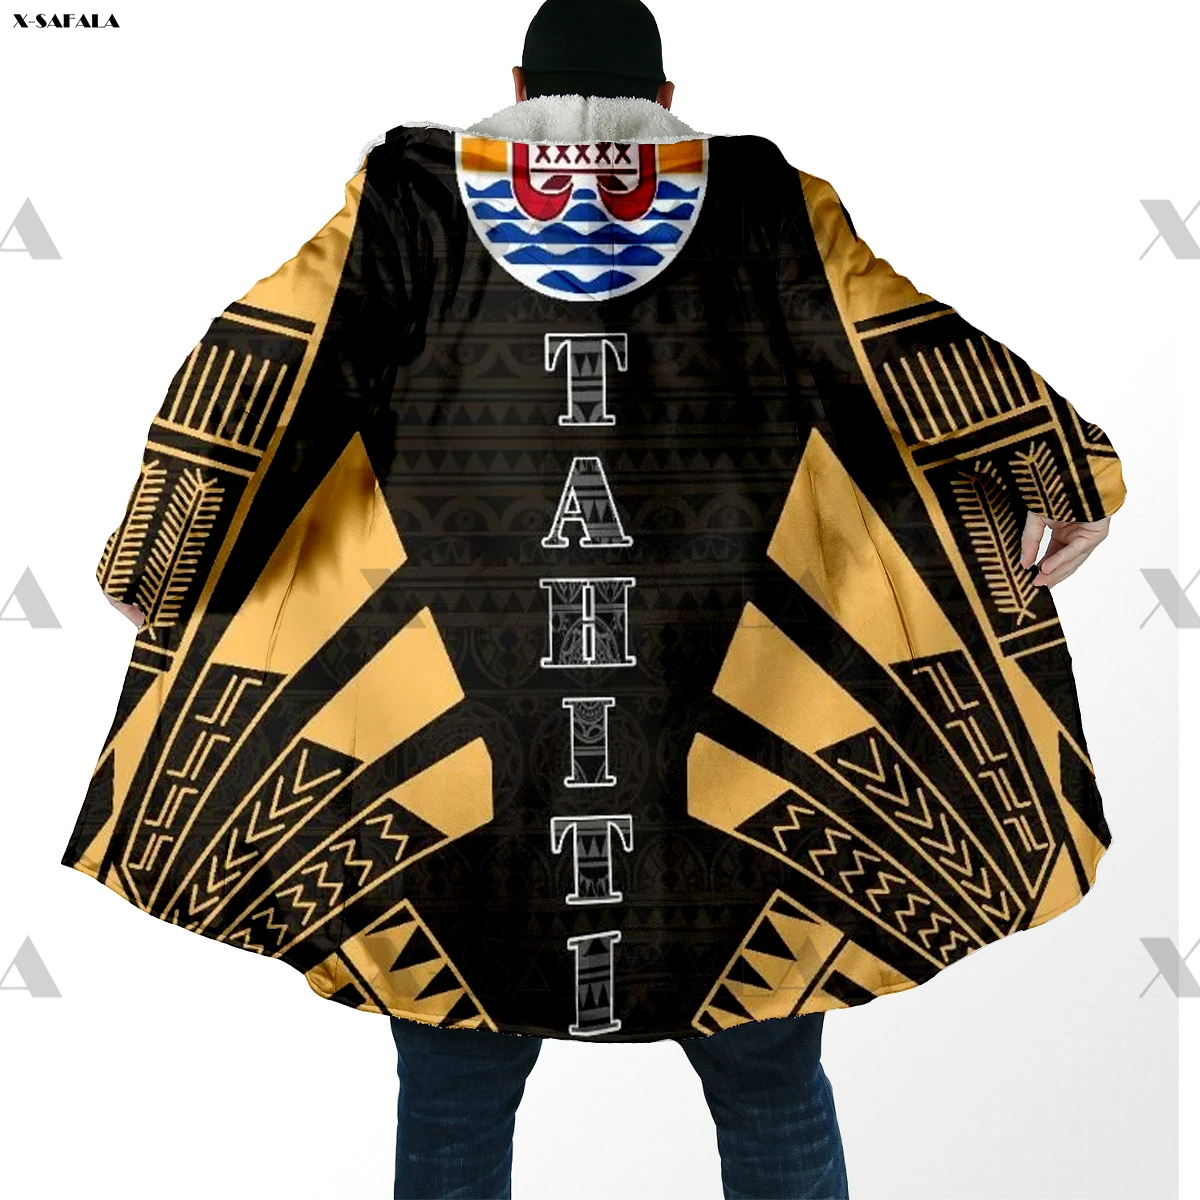 

Tahit полинезийская толстовка с 3D-принтом татуировки длинное пальто с капюшоном плащ толстая пуховая куртка парки верхняя одежда хлопковые пуловеры Dunnes